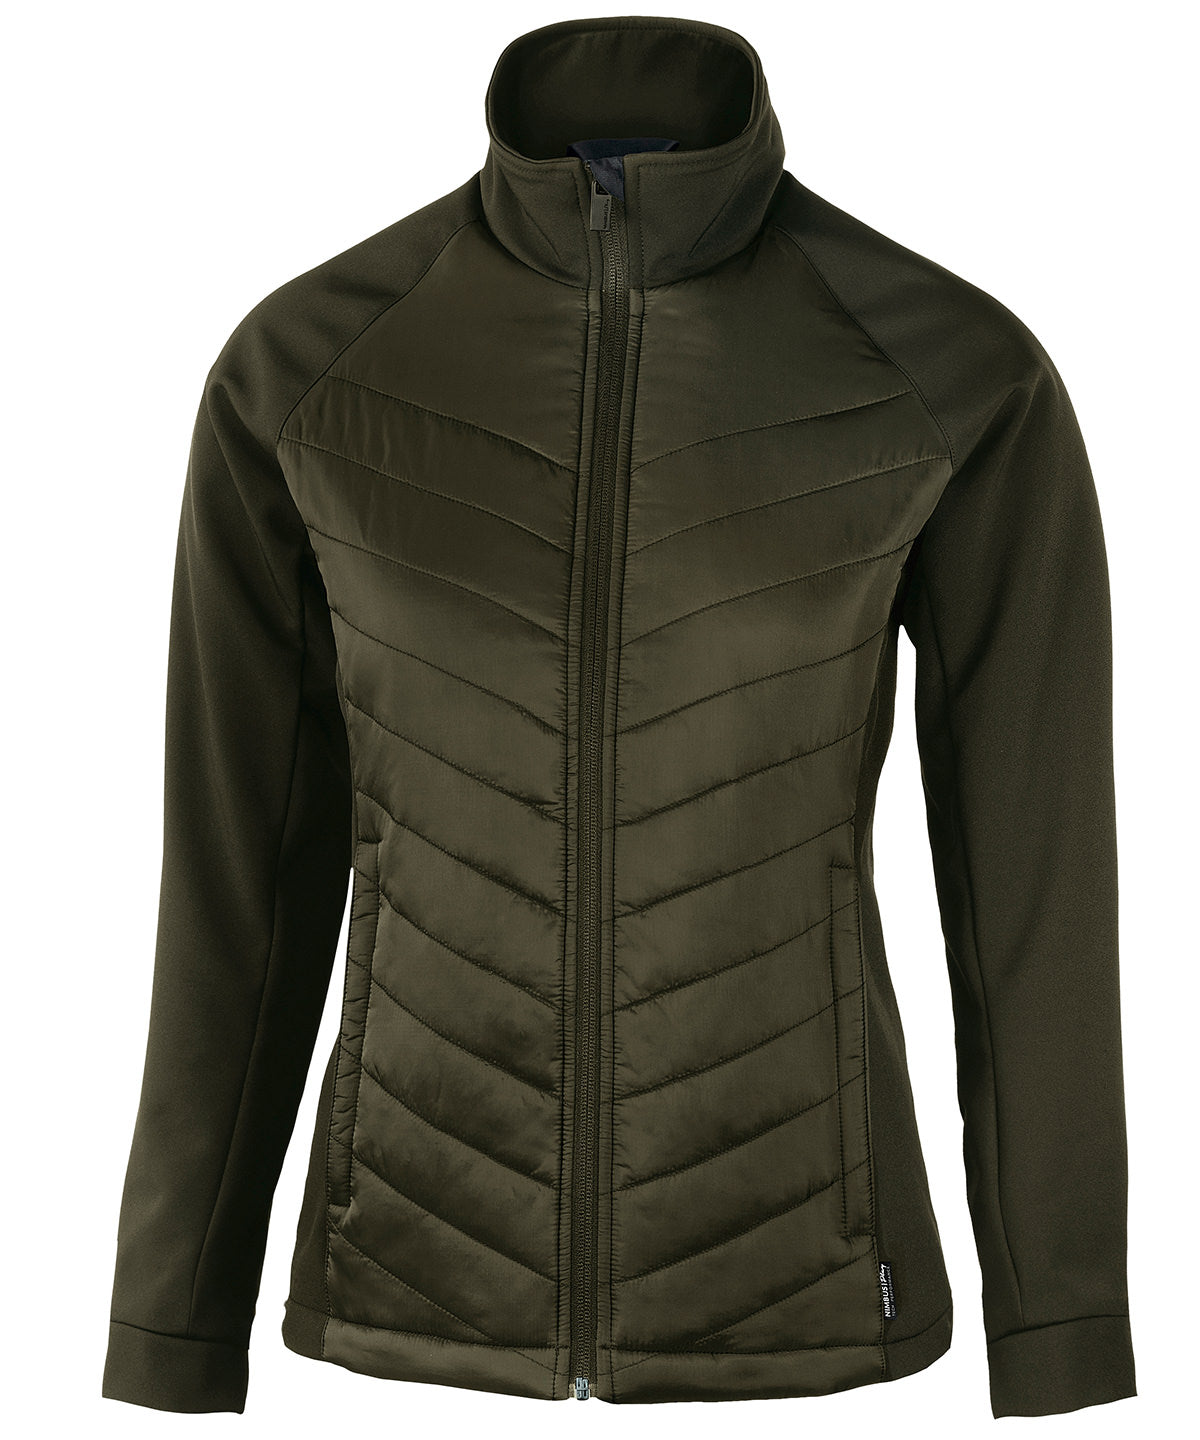 Jakkar - Women’s Bloomsdale – Comfortable Hybrid Jacket